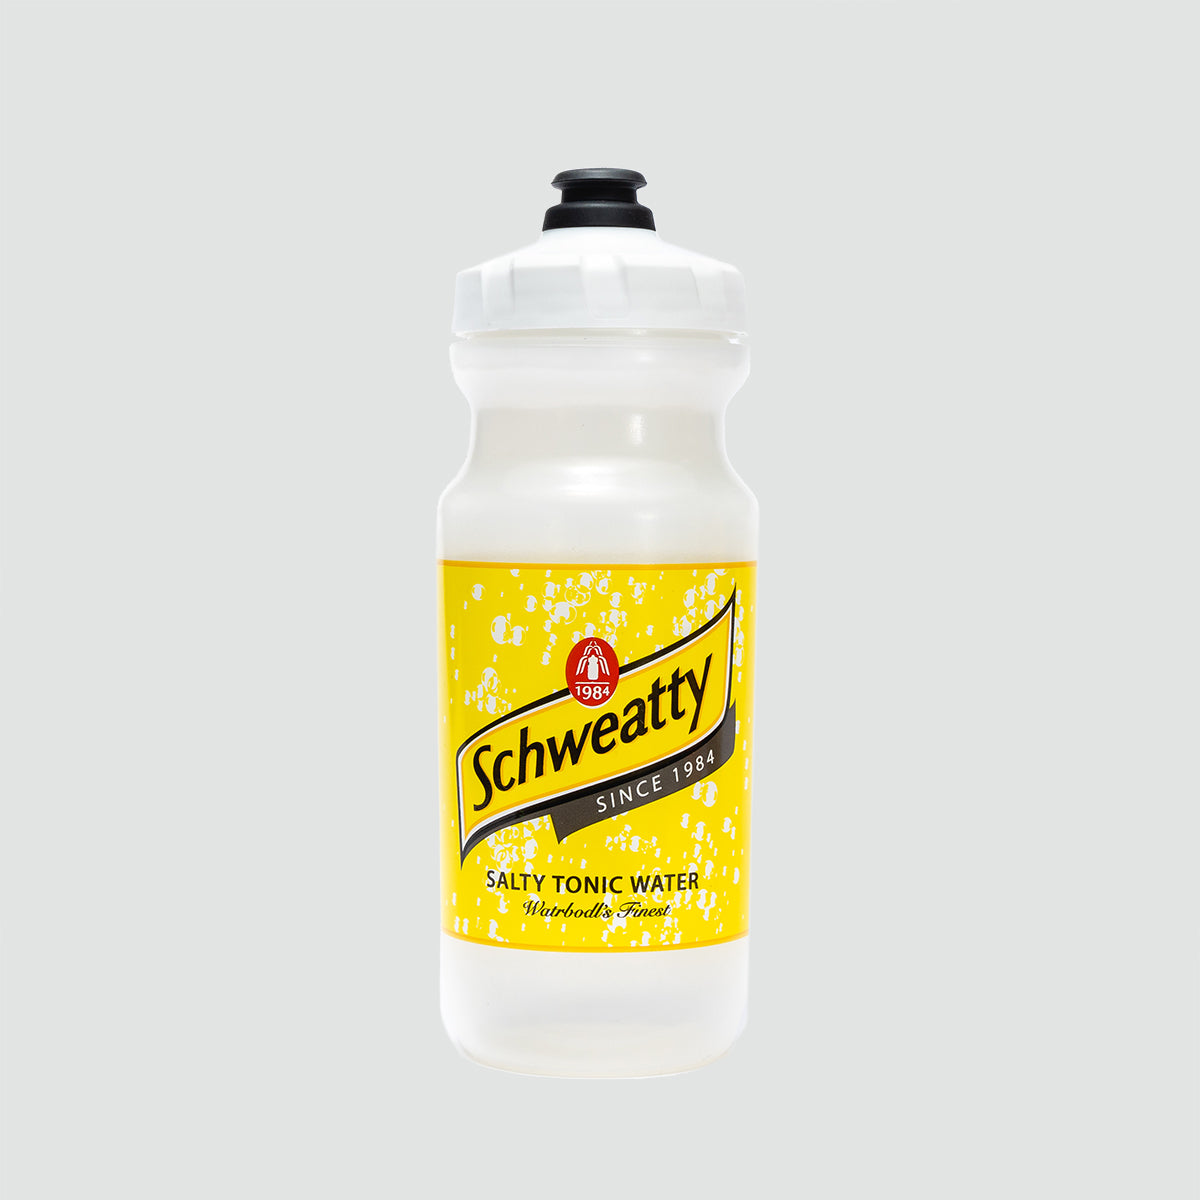 Schweatty 湯力水瓶